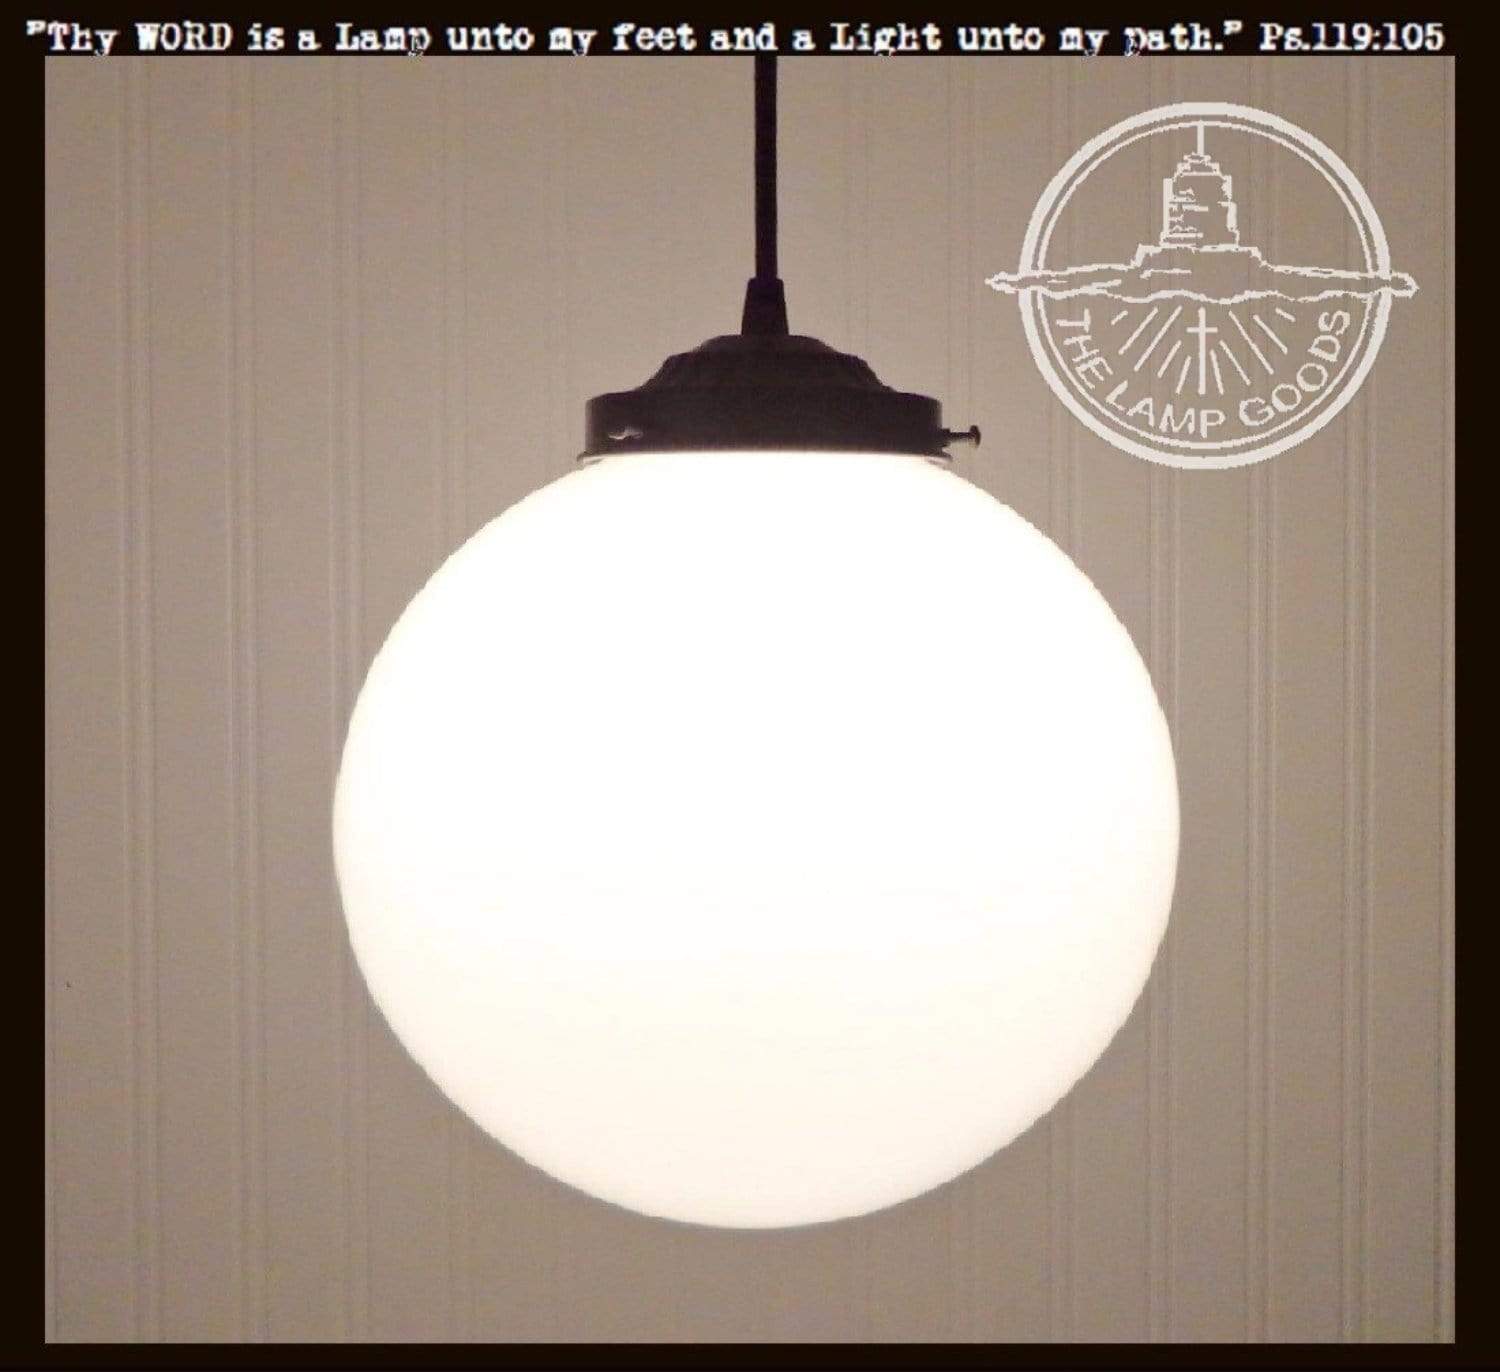 Modern Milk Glass PENDANT Light -14" Globe The Lamp Goods